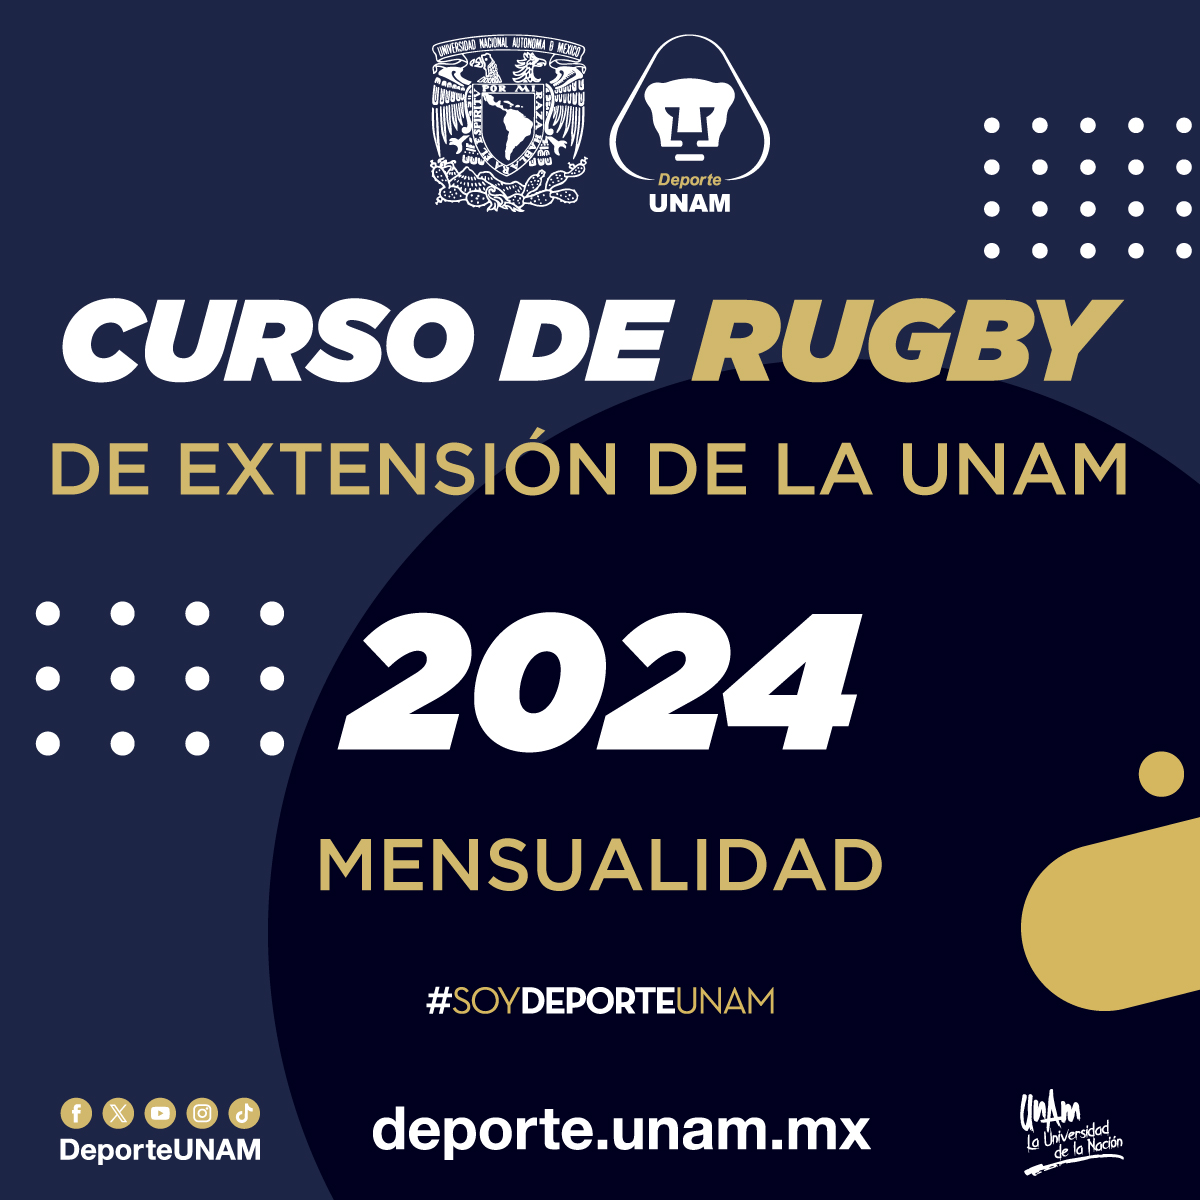 CURSO DE RUGBY DE EXTENSIÓN DE LA UNAM 2024